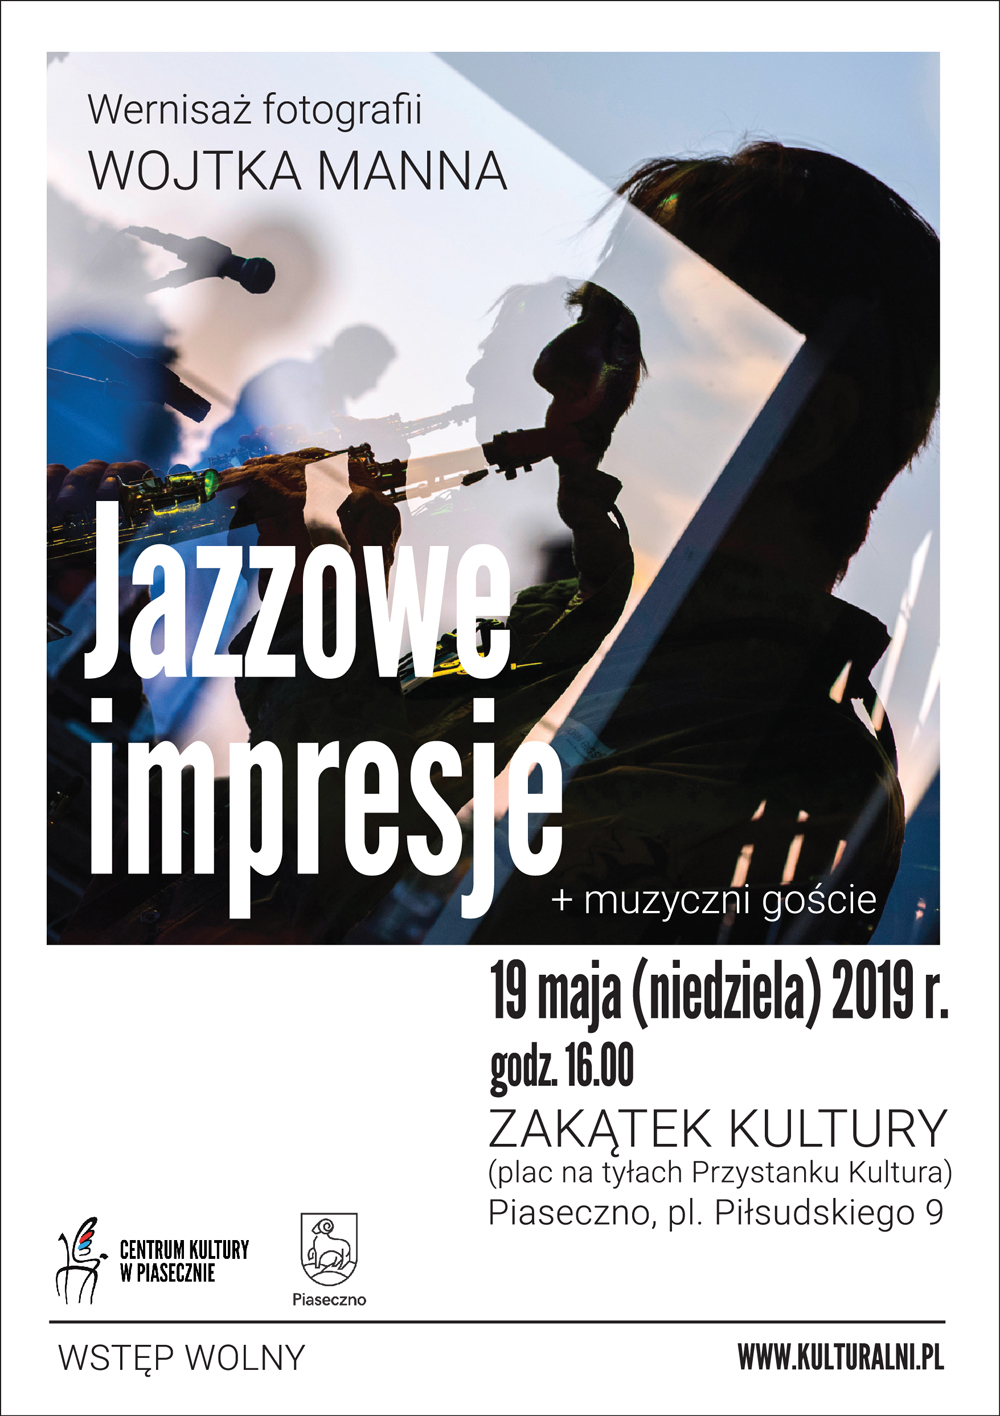 Wernisaż koncertowych fotografii Wojtka Manna - Jazzowe Impresje Piaseczno